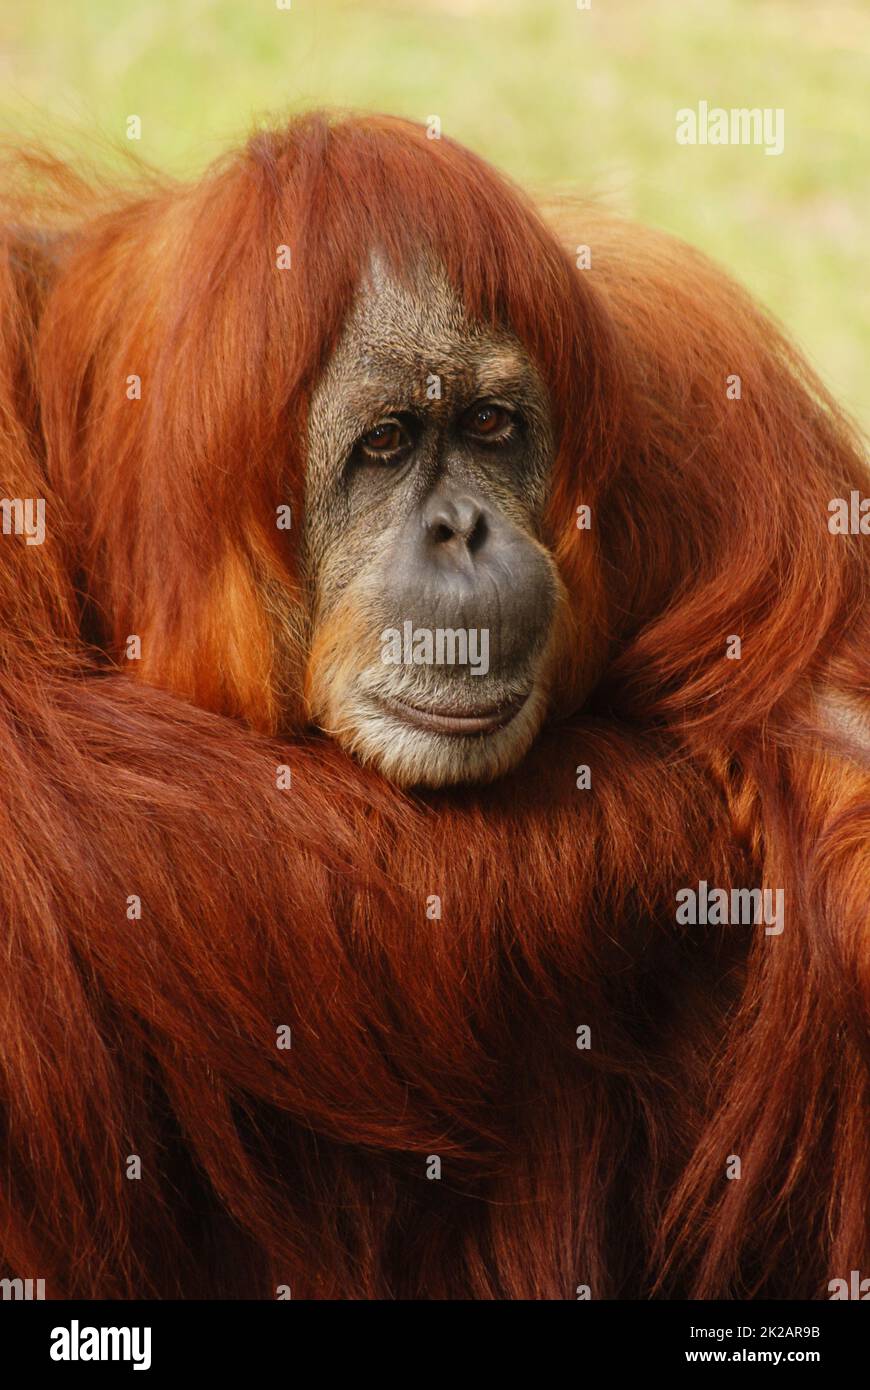 Porträt eines Orang-Utans, Regenwälder von Borneo und Sumatra, Pongo pygmaeus, trauriger, nachdenklicher Gesichtsausdruck, geschützte Arten Stockfoto